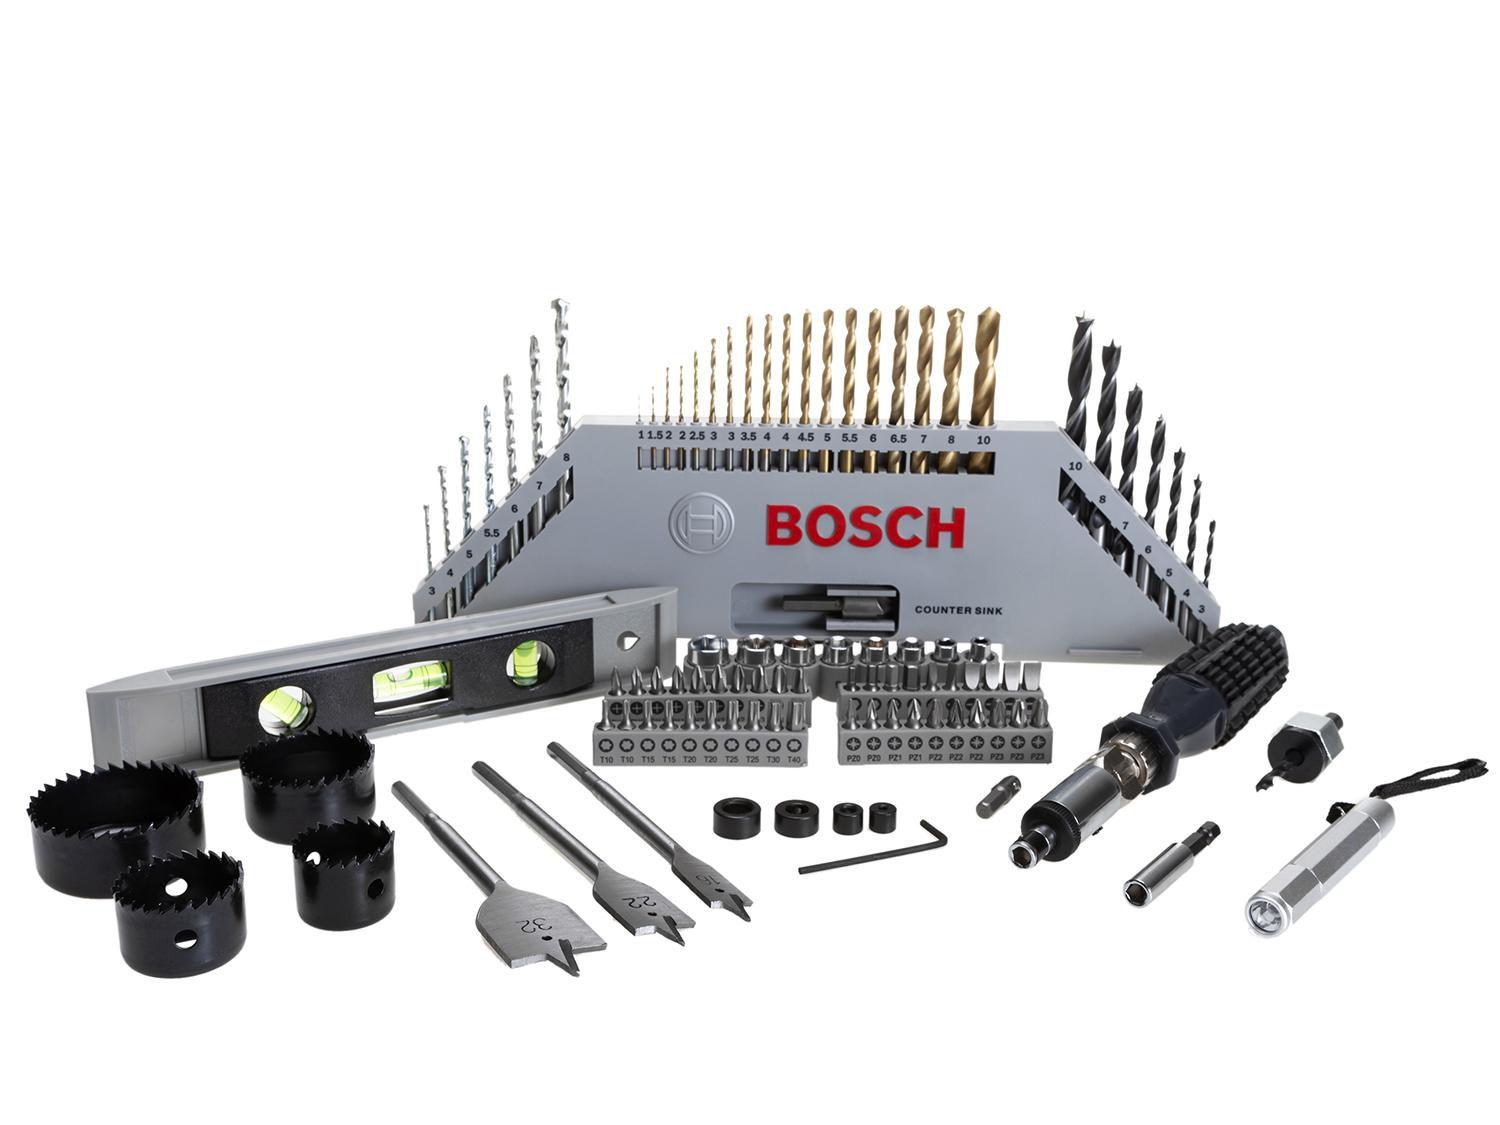 Kit de Ferramentas com 100 Peças X-Line Bosch